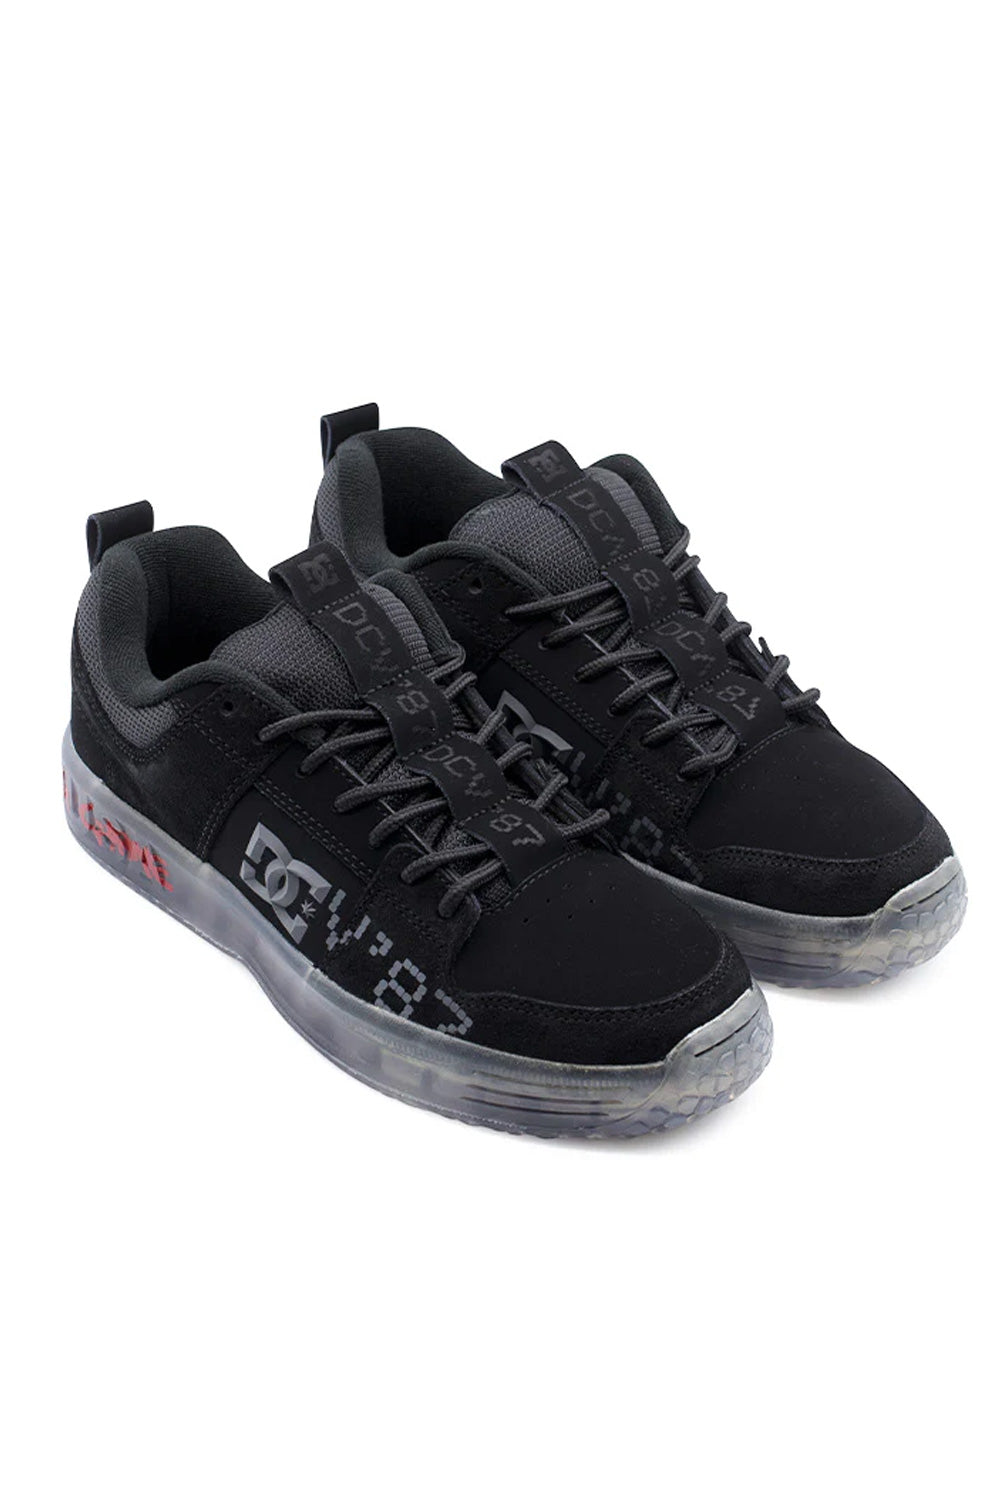 DC Shoes X DCV87 Lynx Shoe (Lucien Clarke) Black - BONKERS